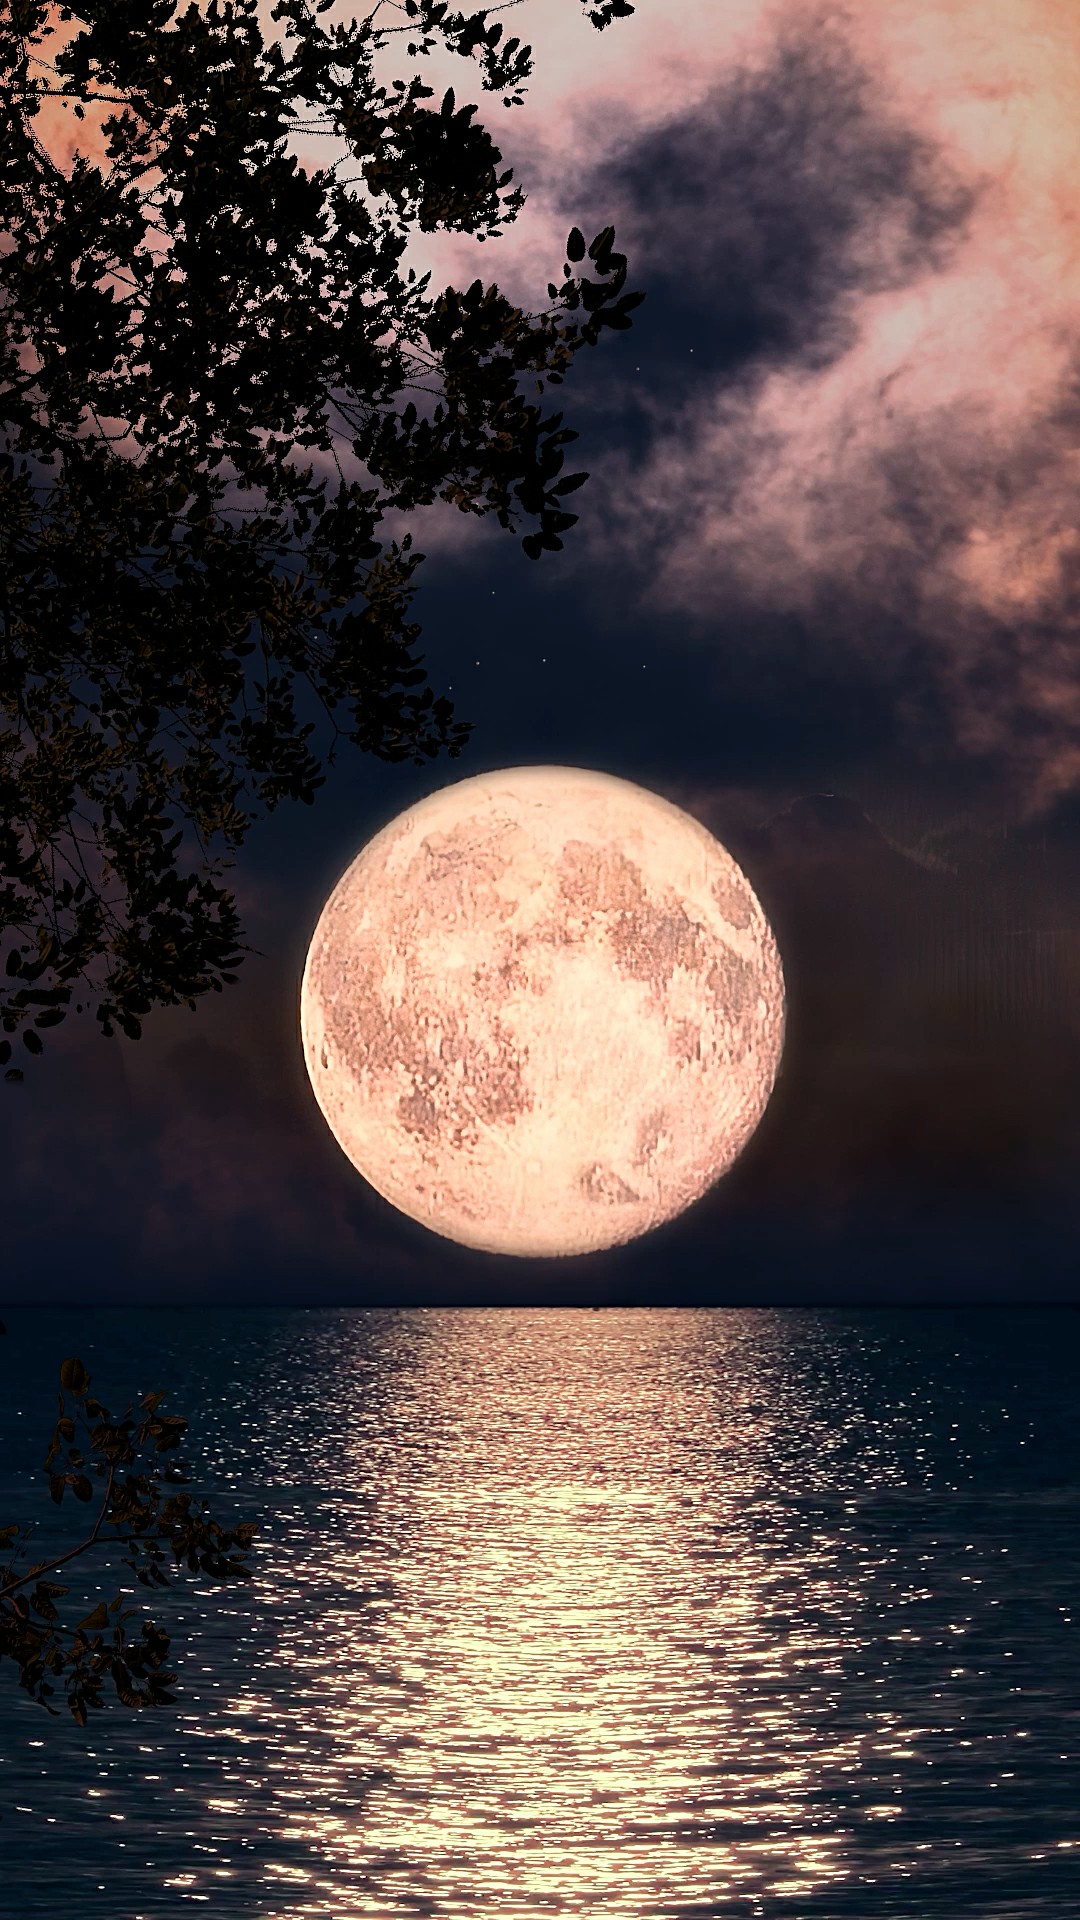 月色正朦胧拨得云开见月明满月时分月球表面的阴影清晰可见